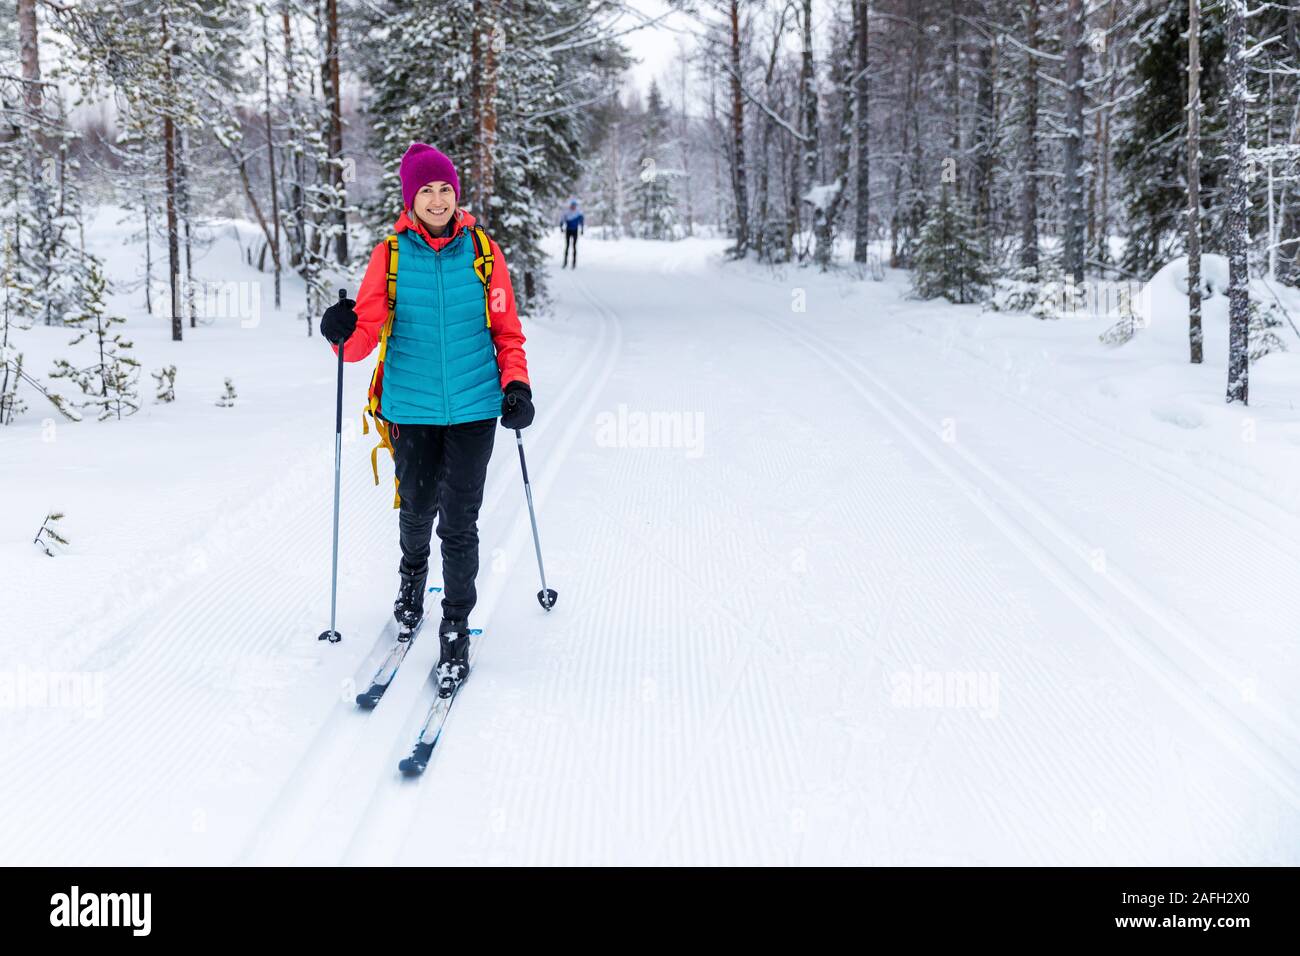 Langlauf - Frau mit Skiern auf verschneiten Wald Skigebiet. Akaslompolo, Finnland Stockfoto